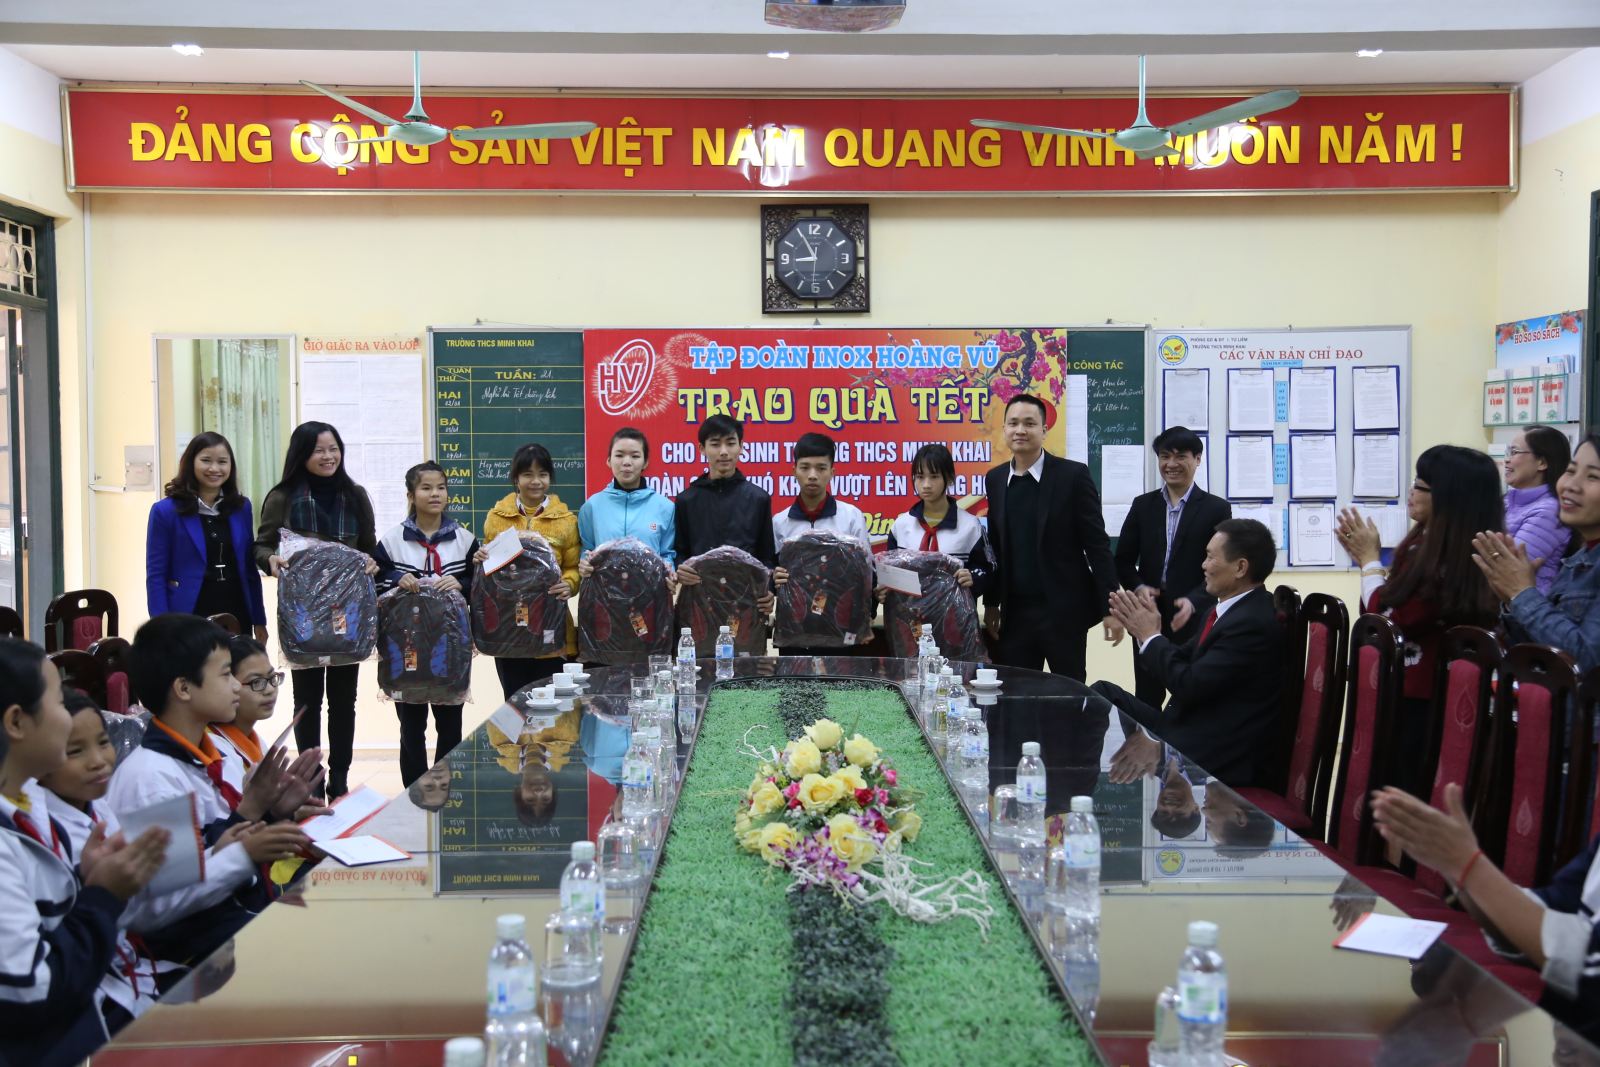 Tặng quà tết Trường cấp 2 Minh Khai -2017